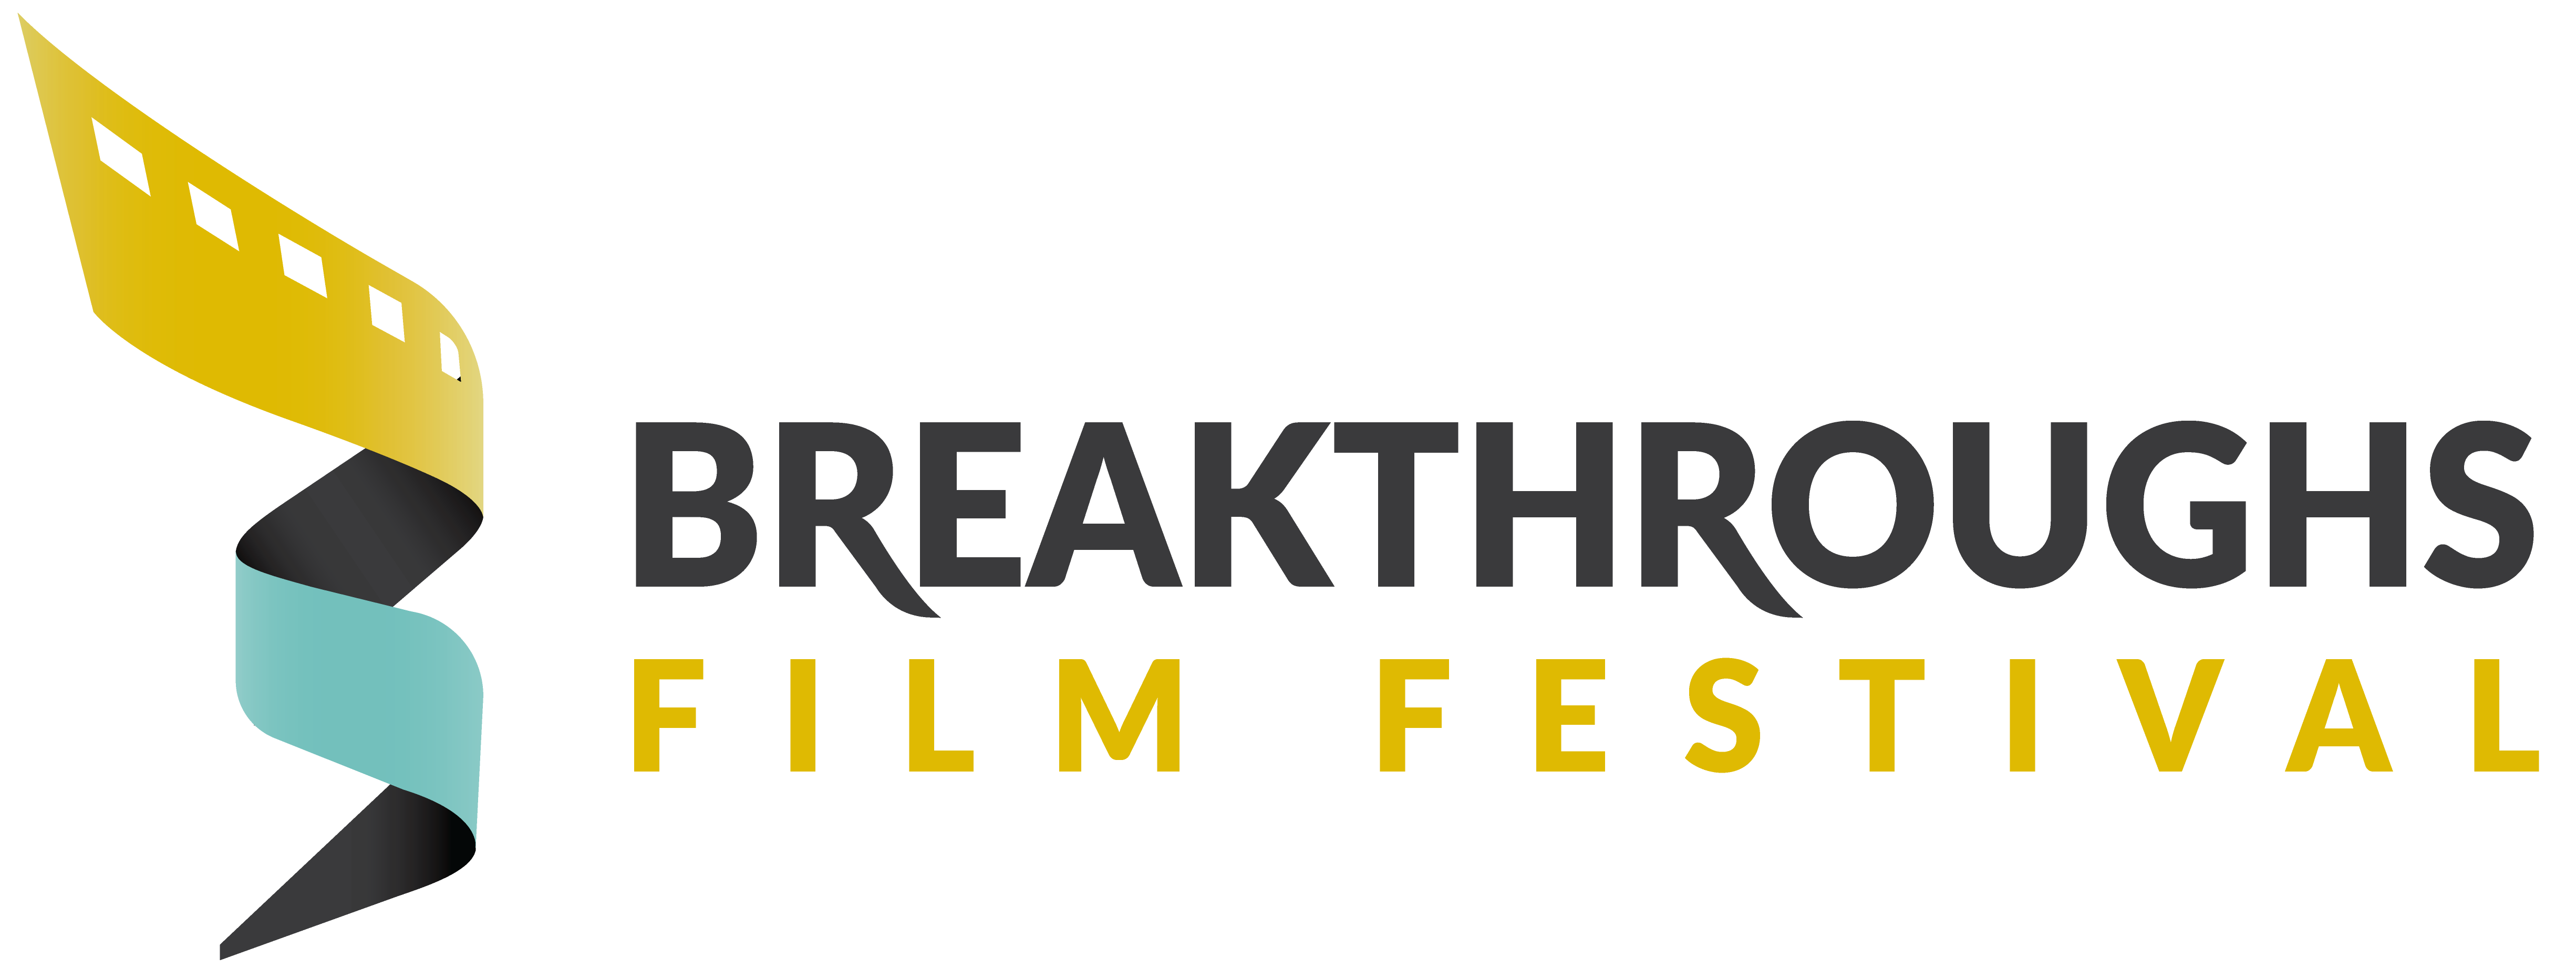 Breakthrough Film Festival logo